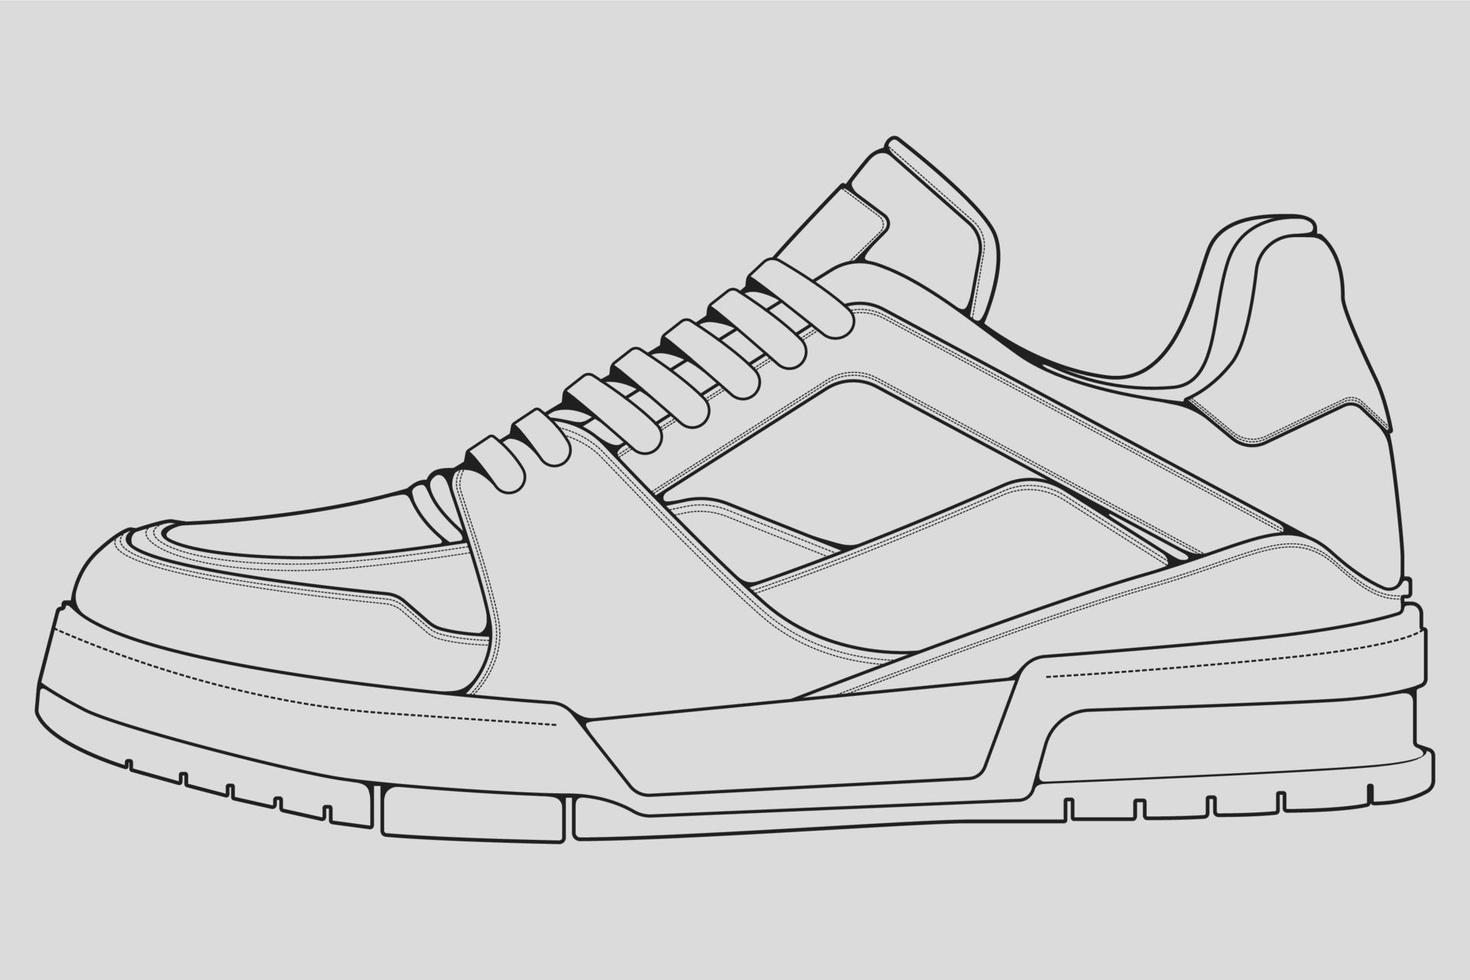 vetor de desenho de contorno de tênis de sapatos, tênis desenhado em um estilo de desenho, contorno de modelo de treinadores de tênis de linha preta, ilustração vetorial.